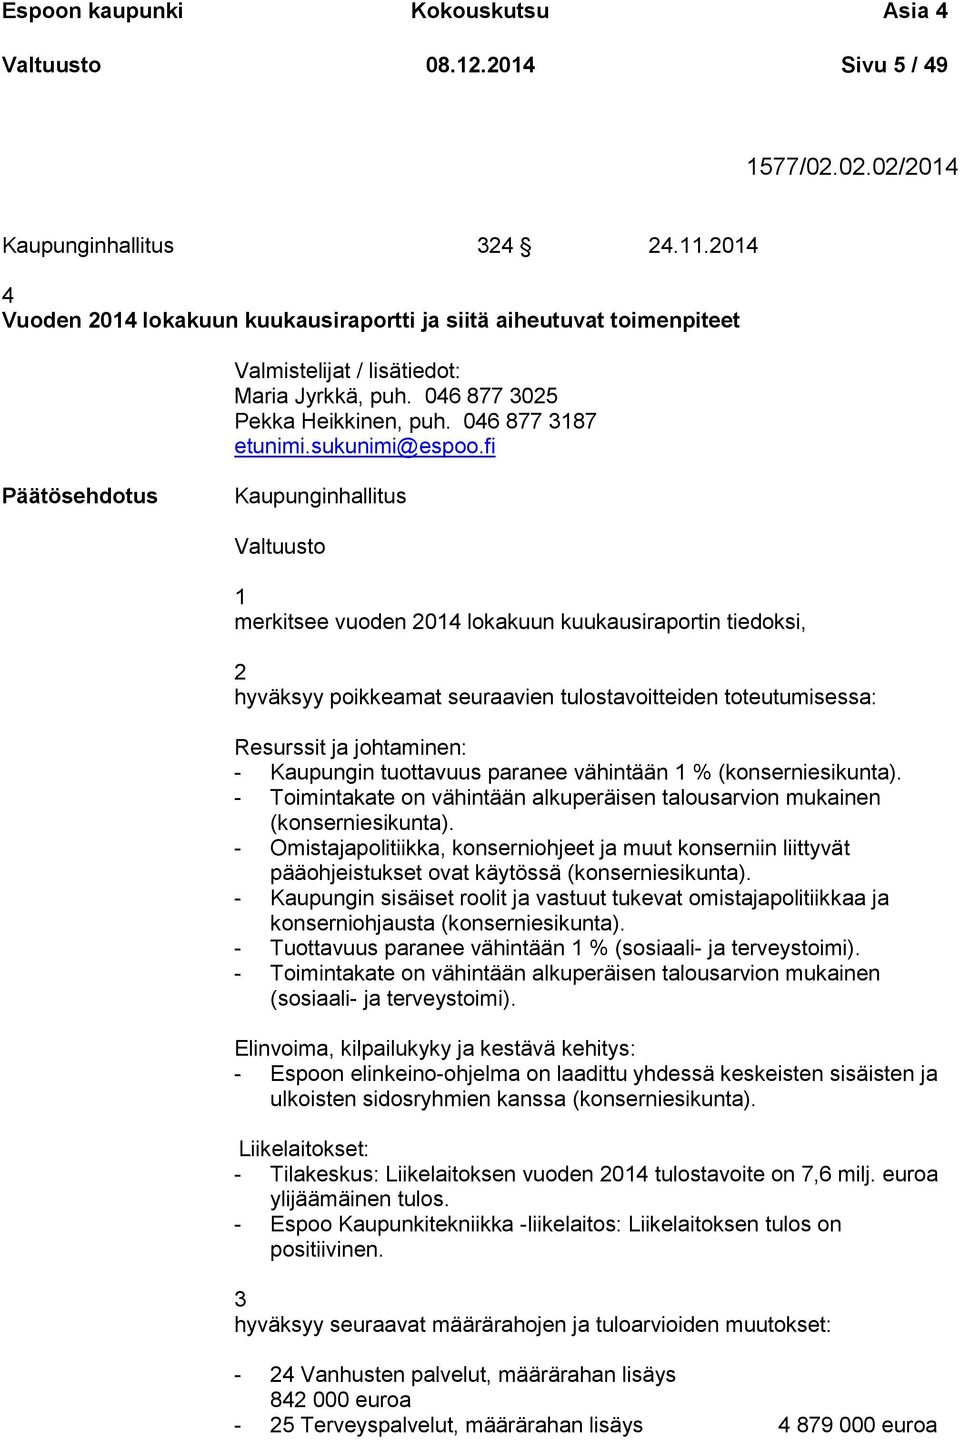 fi Kaupunginhallitus Valtuusto 1 merkitsee vuoden 2014 lokakuun kuukausiraportin tiedoksi, 2 hyväksyy poikkeamat seuraavien tulostavoitteiden toteutumisessa: Resurssit ja johtaminen: - Kaupungin